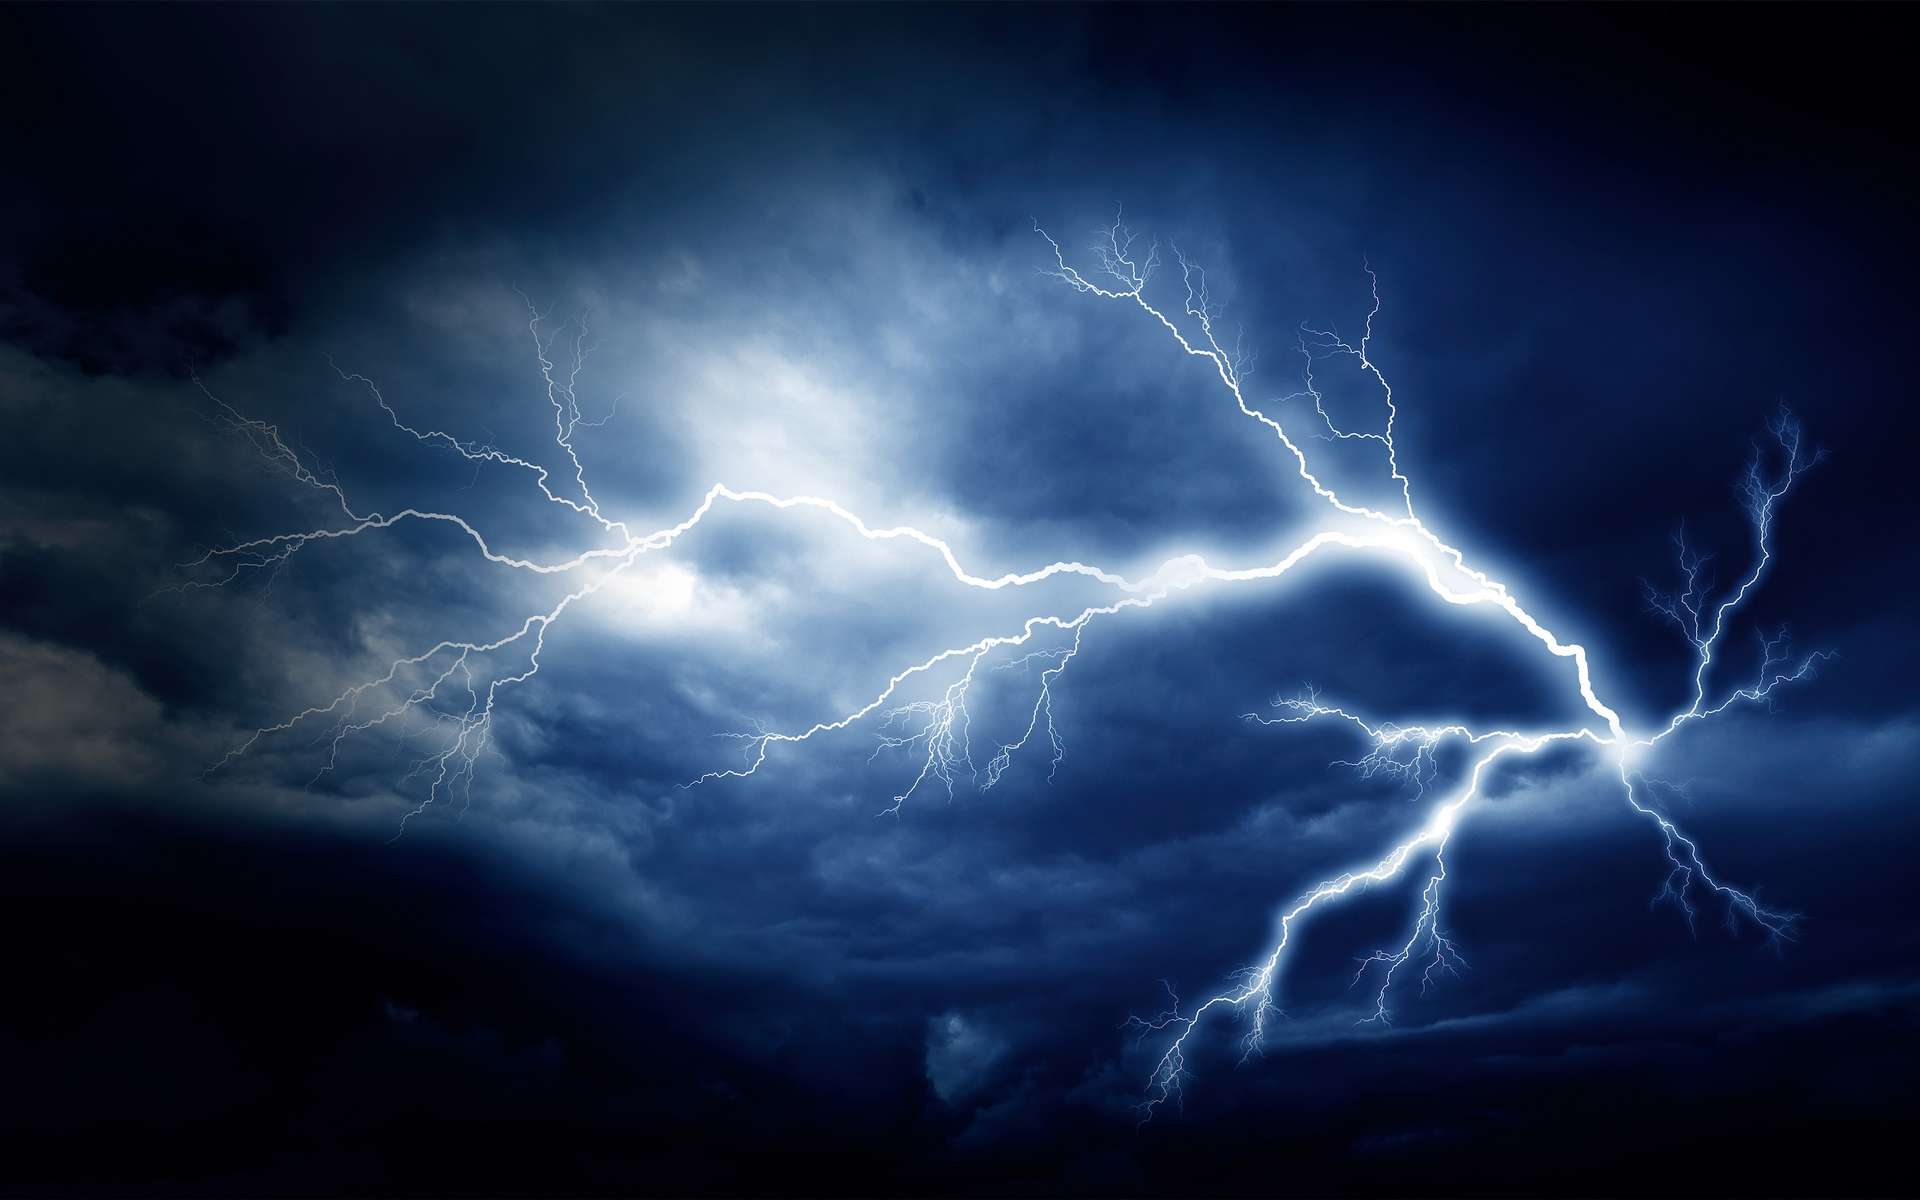 La foudre est un phénomène naturel de décharge électrostatique de grande intensité et provoquant des éclairs. © Denis Rozhnovsky, Adobe Stock